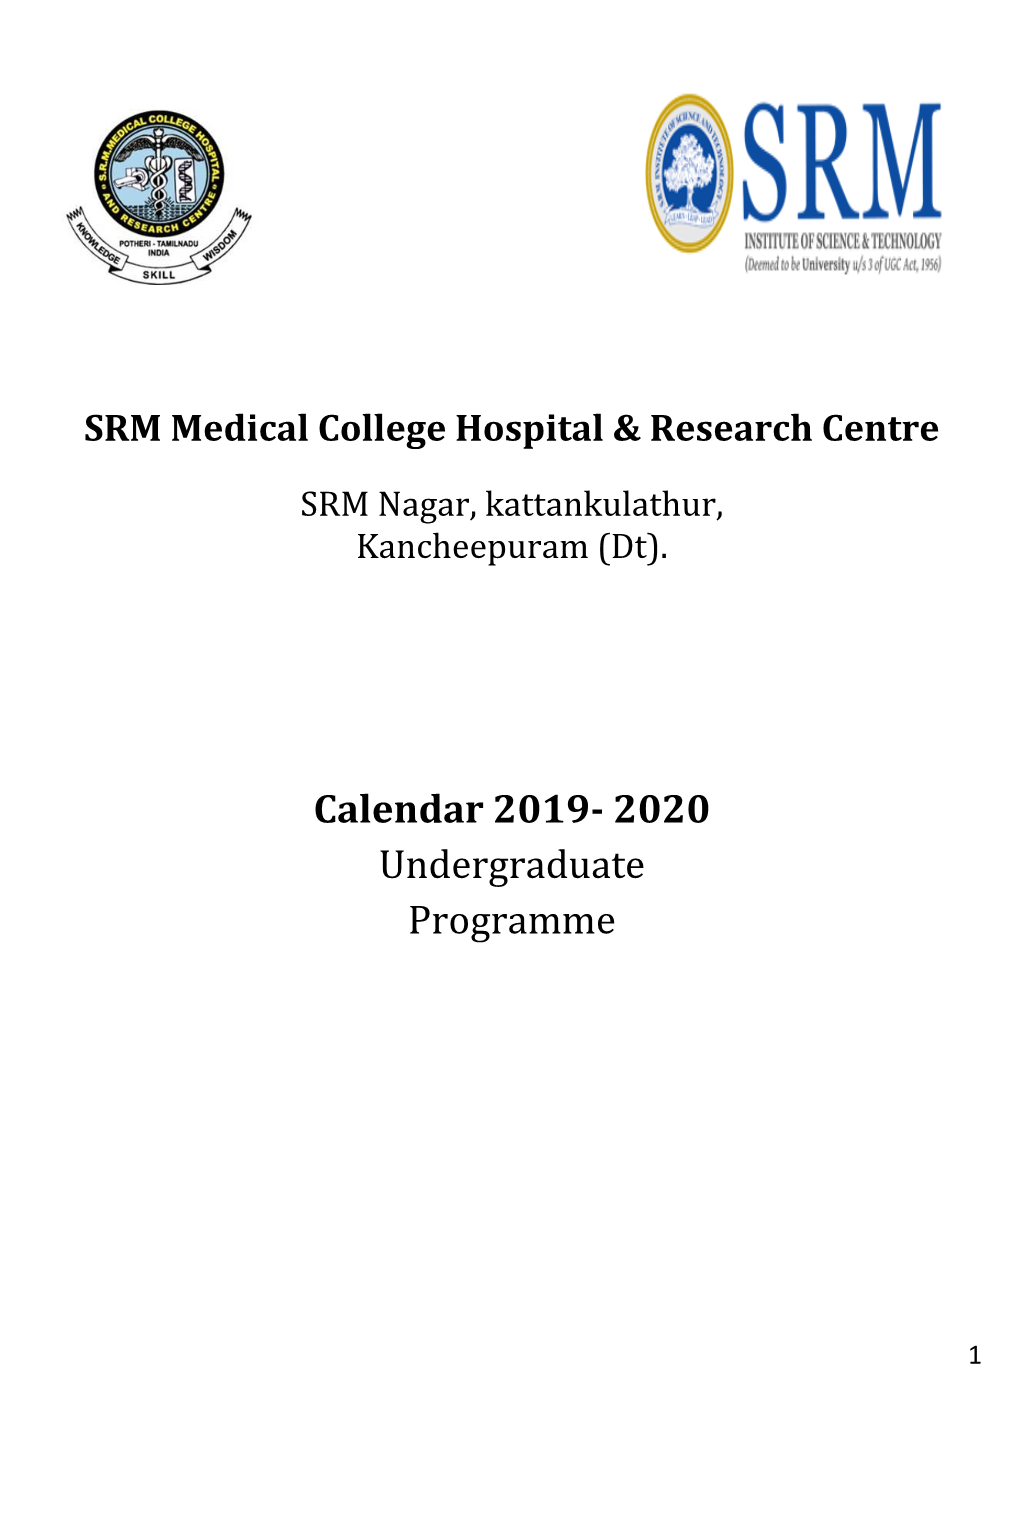 Calendar 2019- 2020 Undergraduate Programme